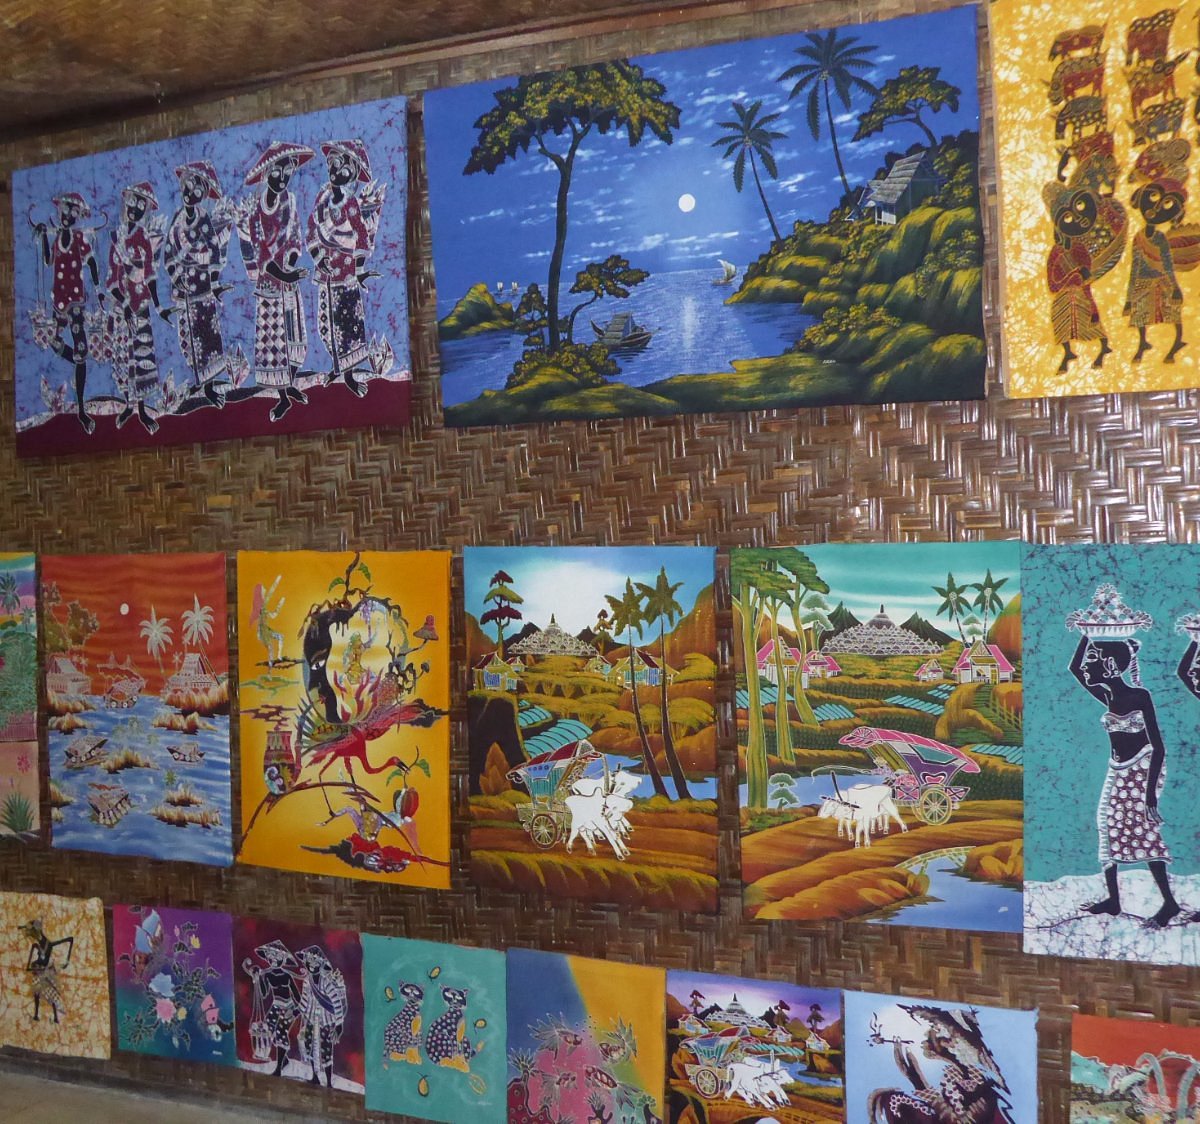 Buitengewoon pepermunt Verbergen Batik Painting Art Gallery (Jogjakarta) - 2023 Alles wat u moet weten  VOORDAT je gaat - Tripadvisor